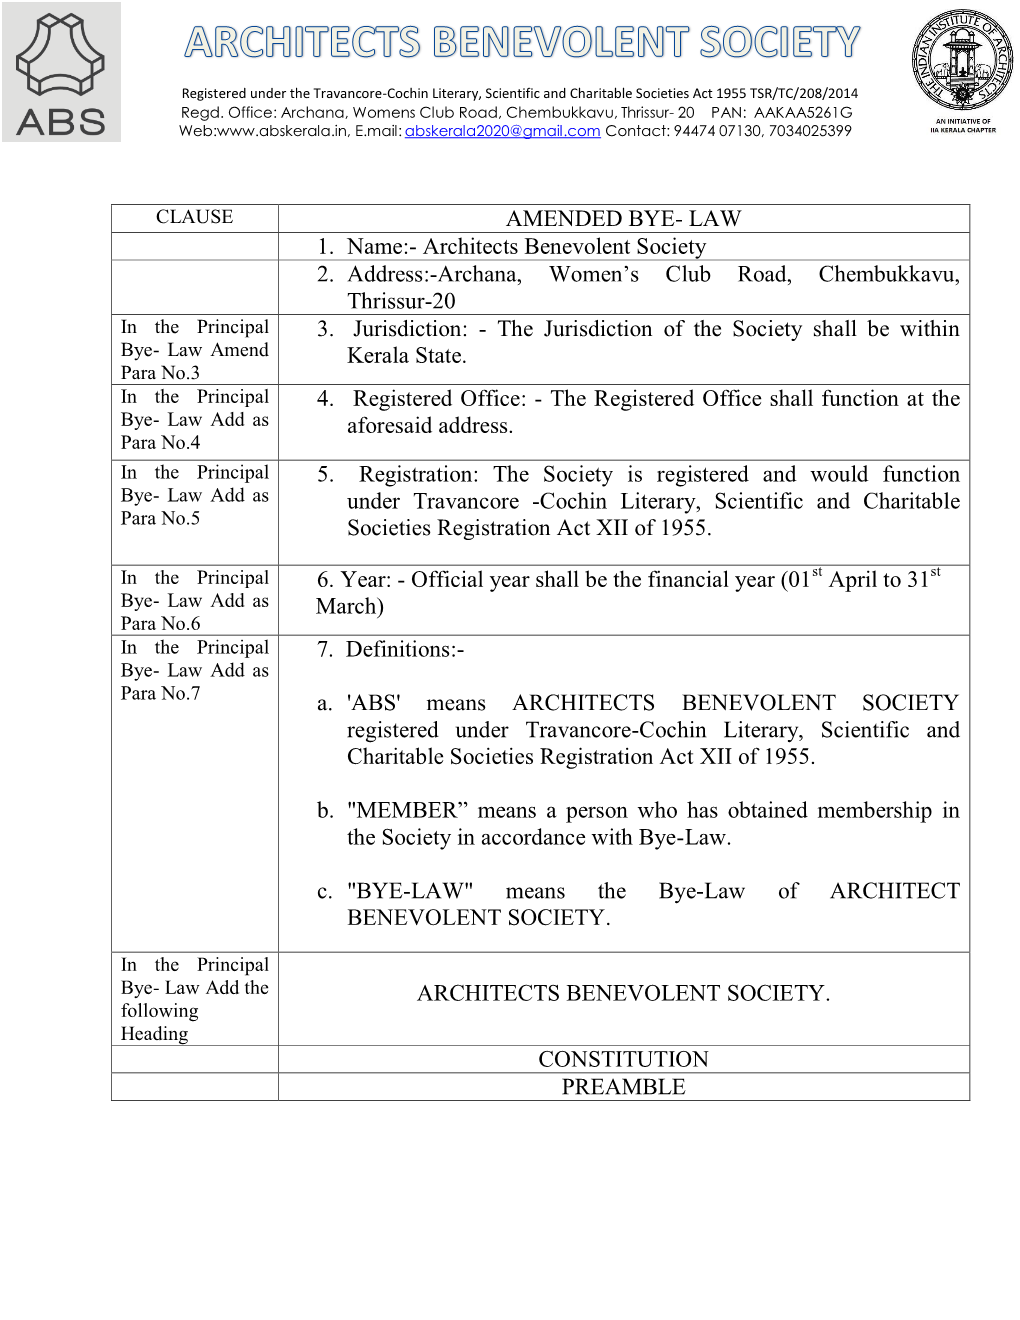 AMENDED BYE- LAW 1. Name:- Architects Benevolent Society 2. Address:-Archana, Women's Club Road, Chembukkavu, Thrissur-20 3. J